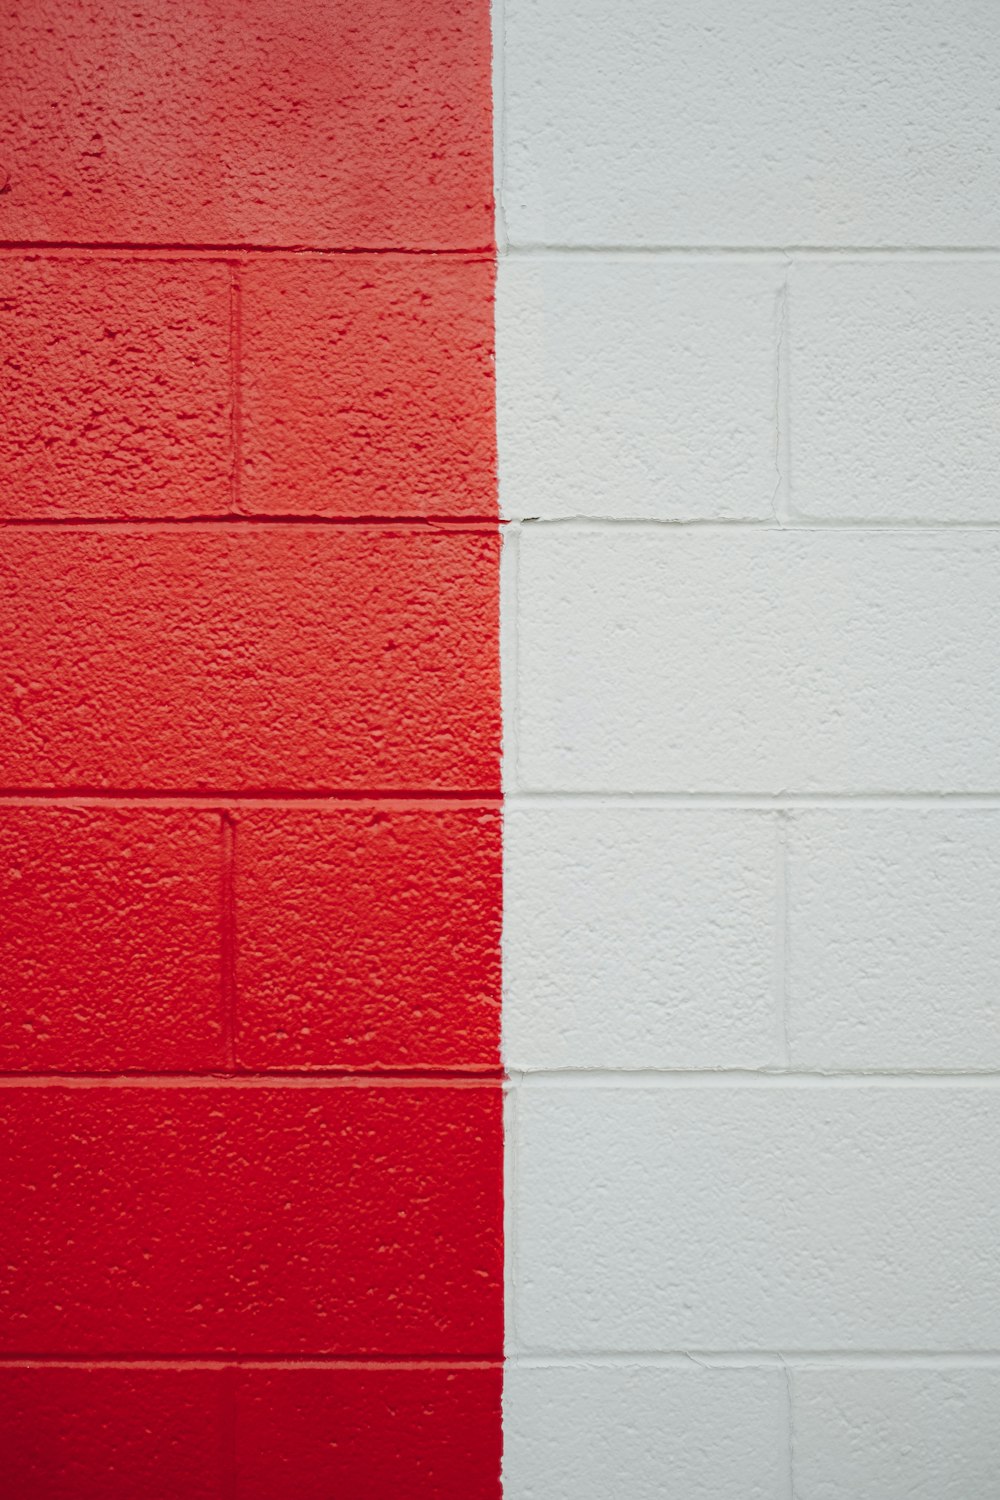 빨간색과 흰색 줄무늬가 있는 빨간색과 흰색 벽